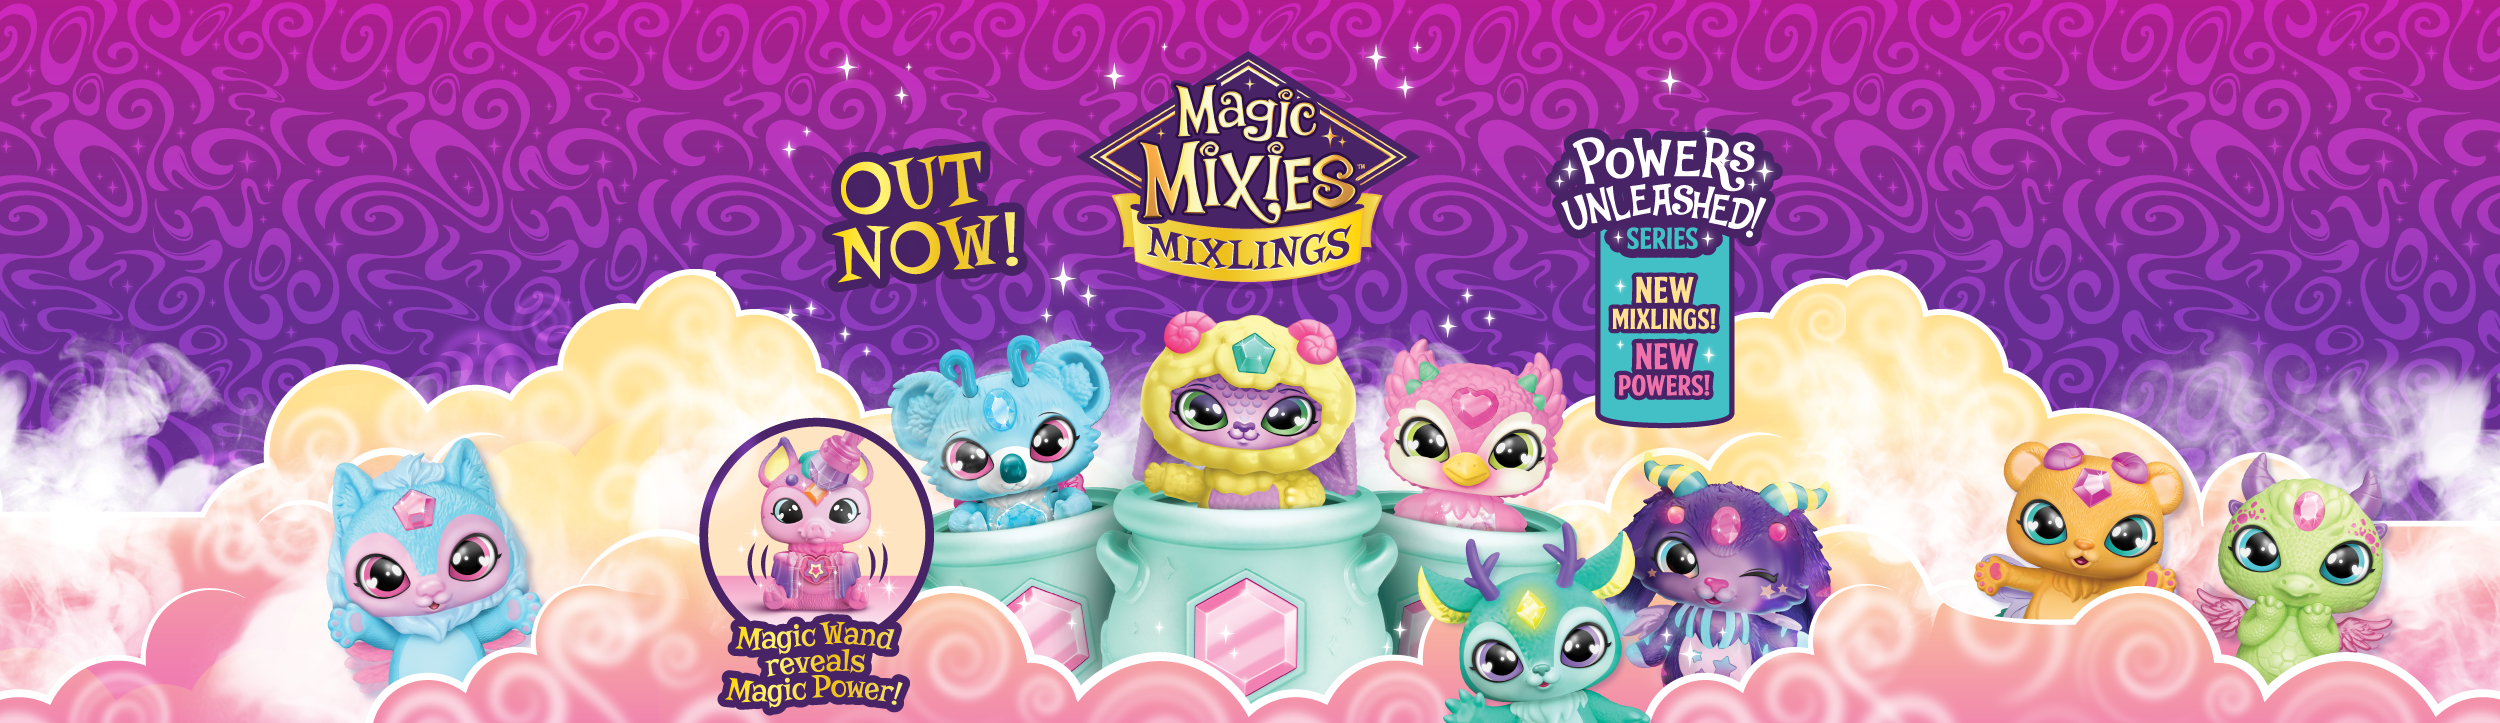 Magic mixies mixlings brand page